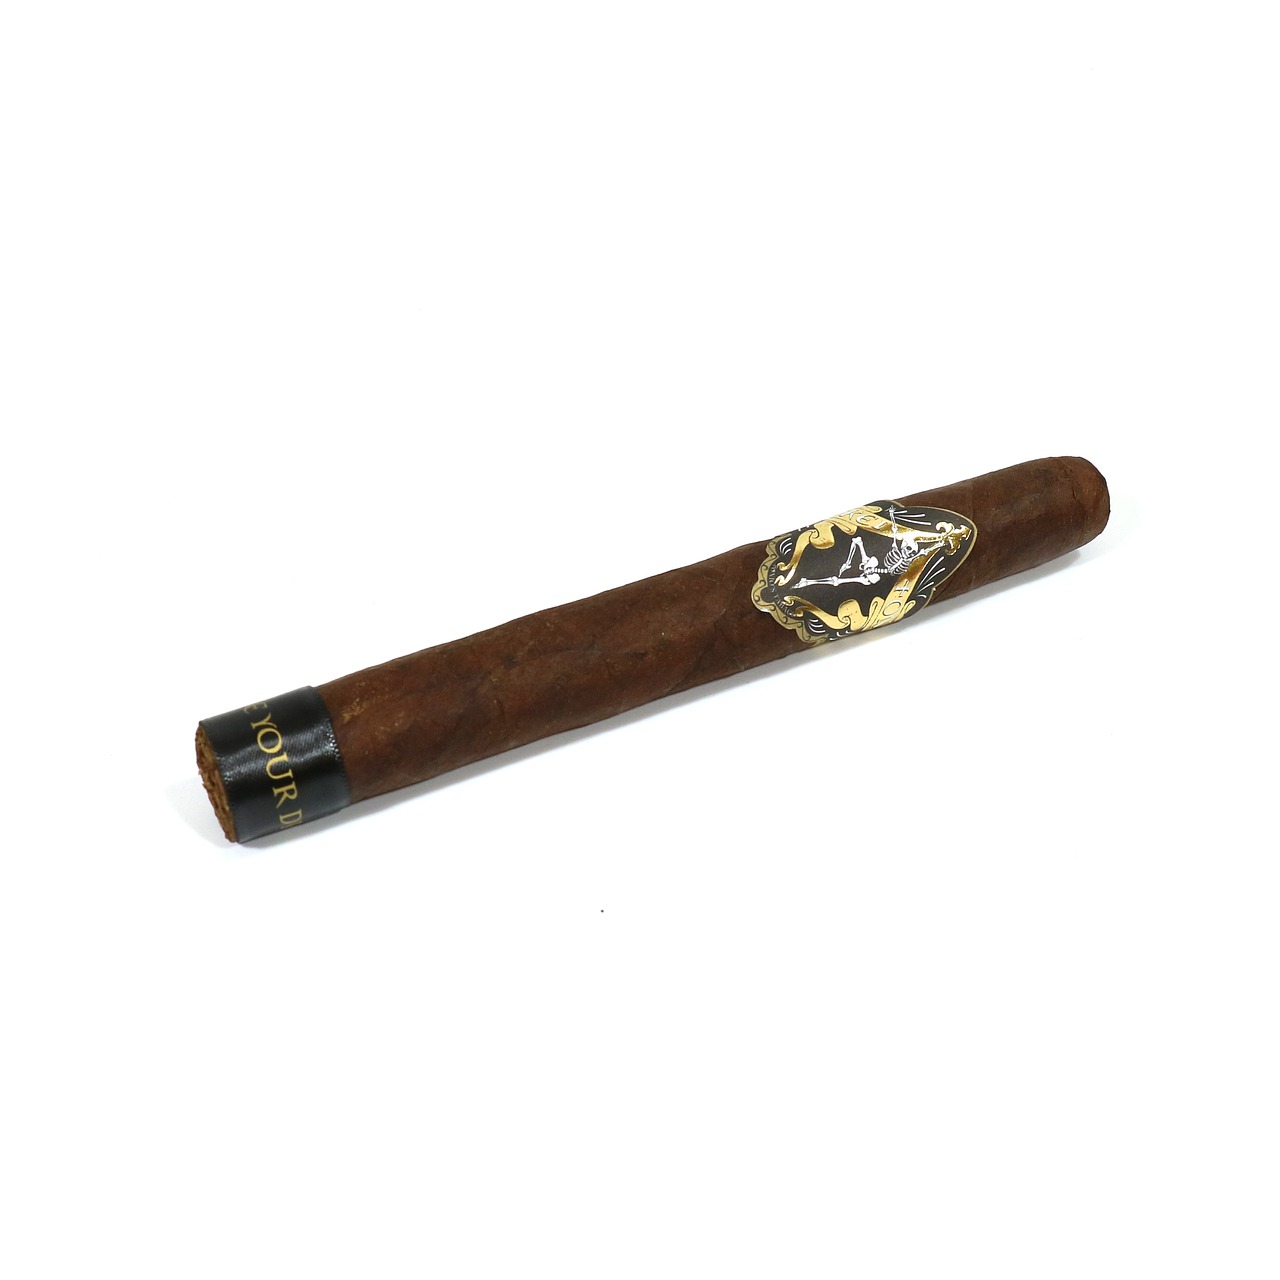 Cigarai, Rūkymas, Mėgautis, Tabakas, Kuba, Nikaragva, Habano, Estelí, Vip, Cigaras